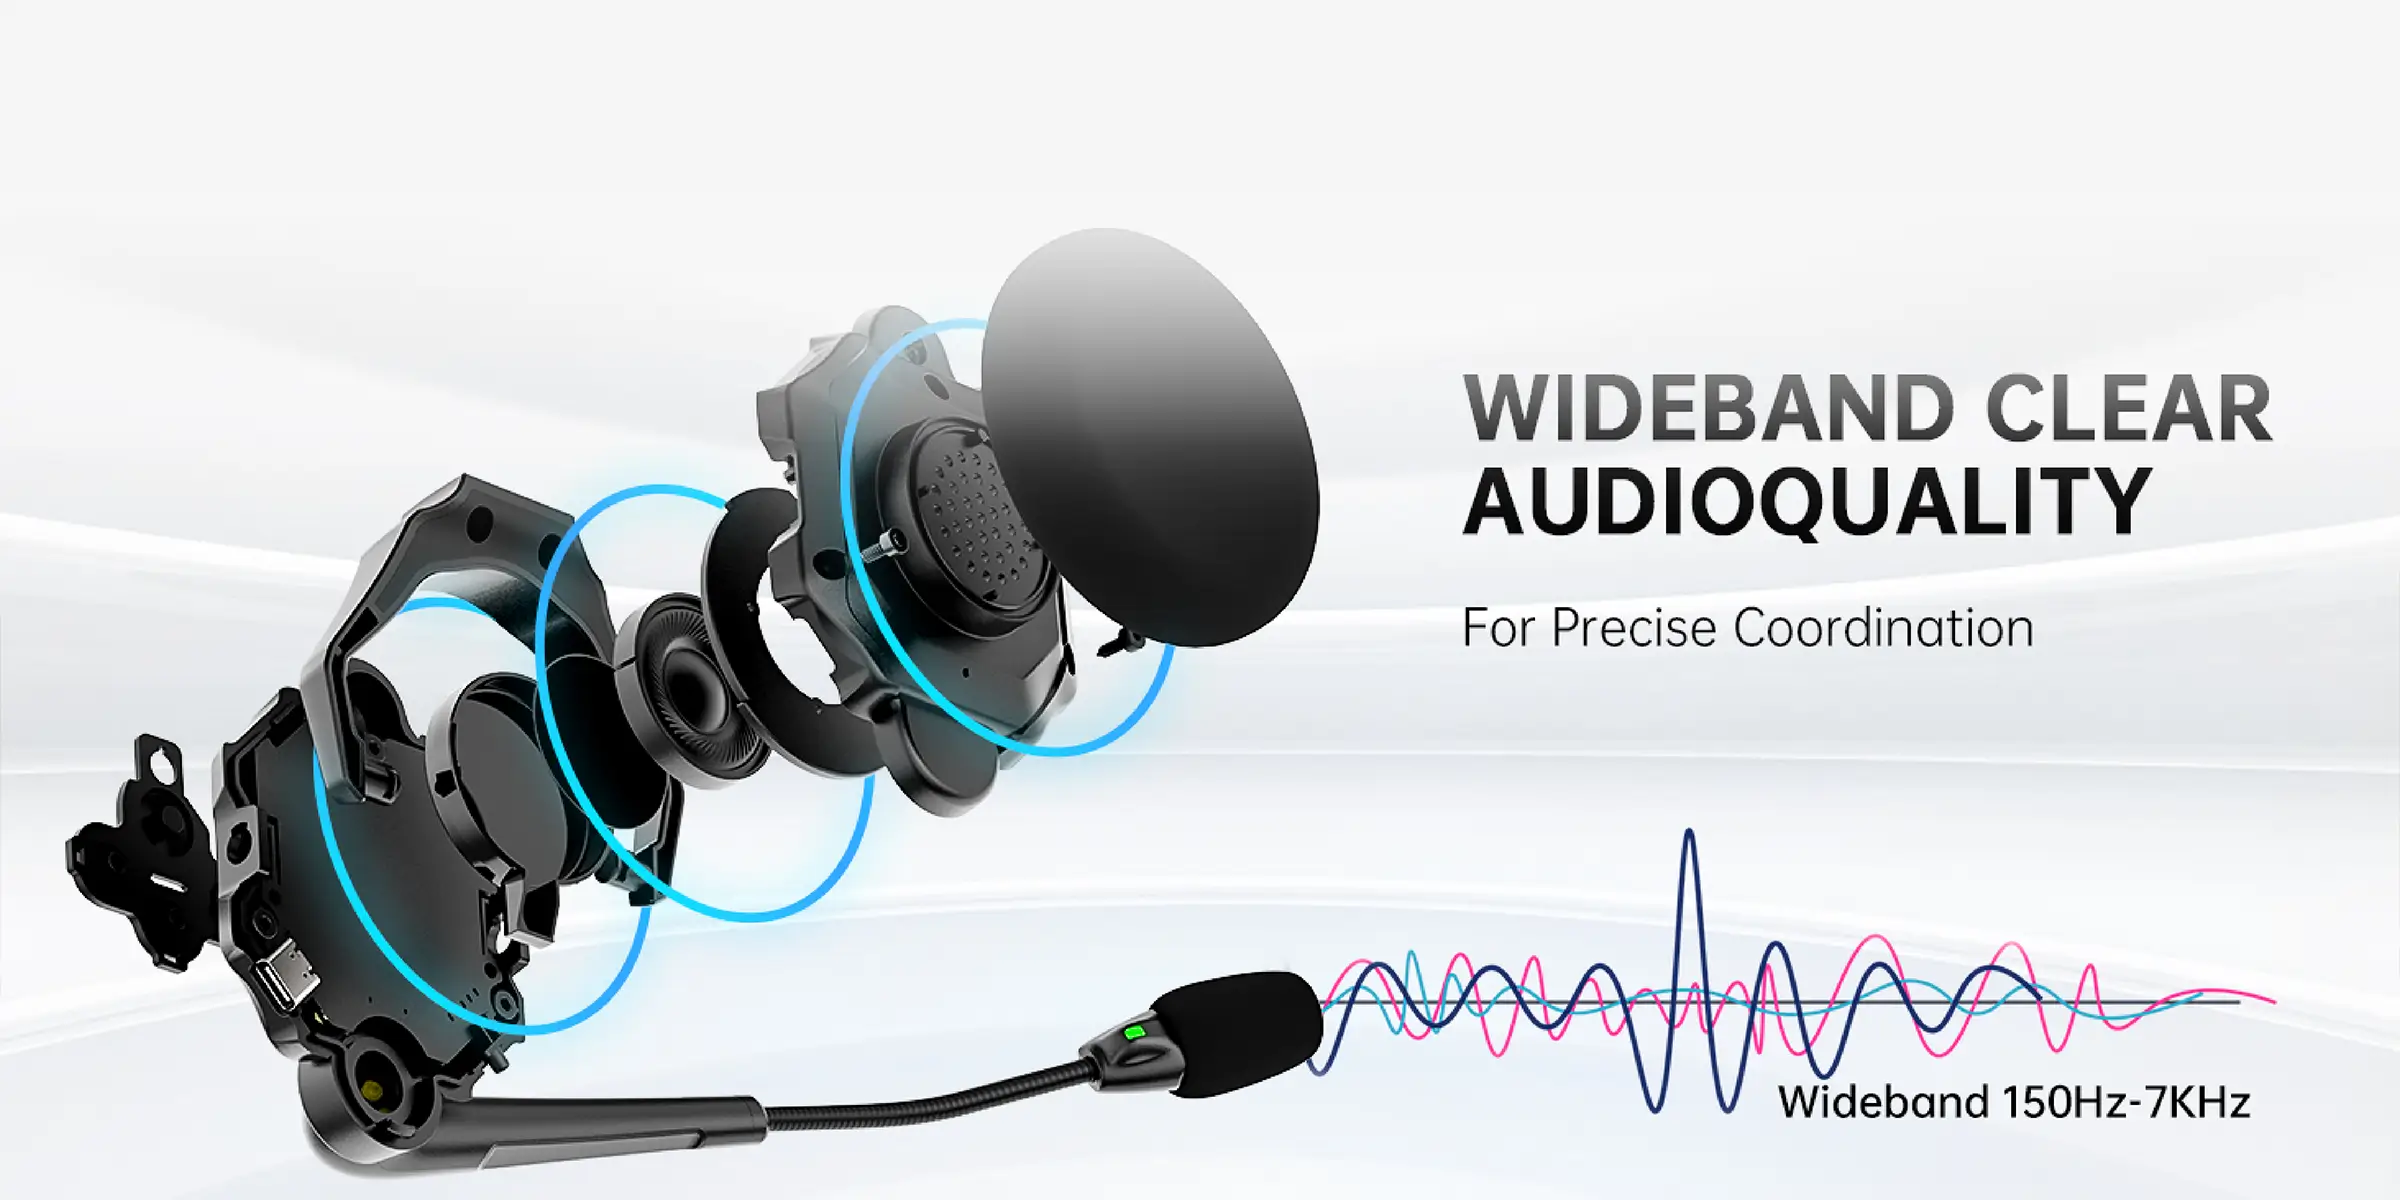 میکروفون هدست‌های Solidcom صدای باکیفیتی را در دامنه فرکانسی 150Hz تا 7KHz ارائه می دهد.